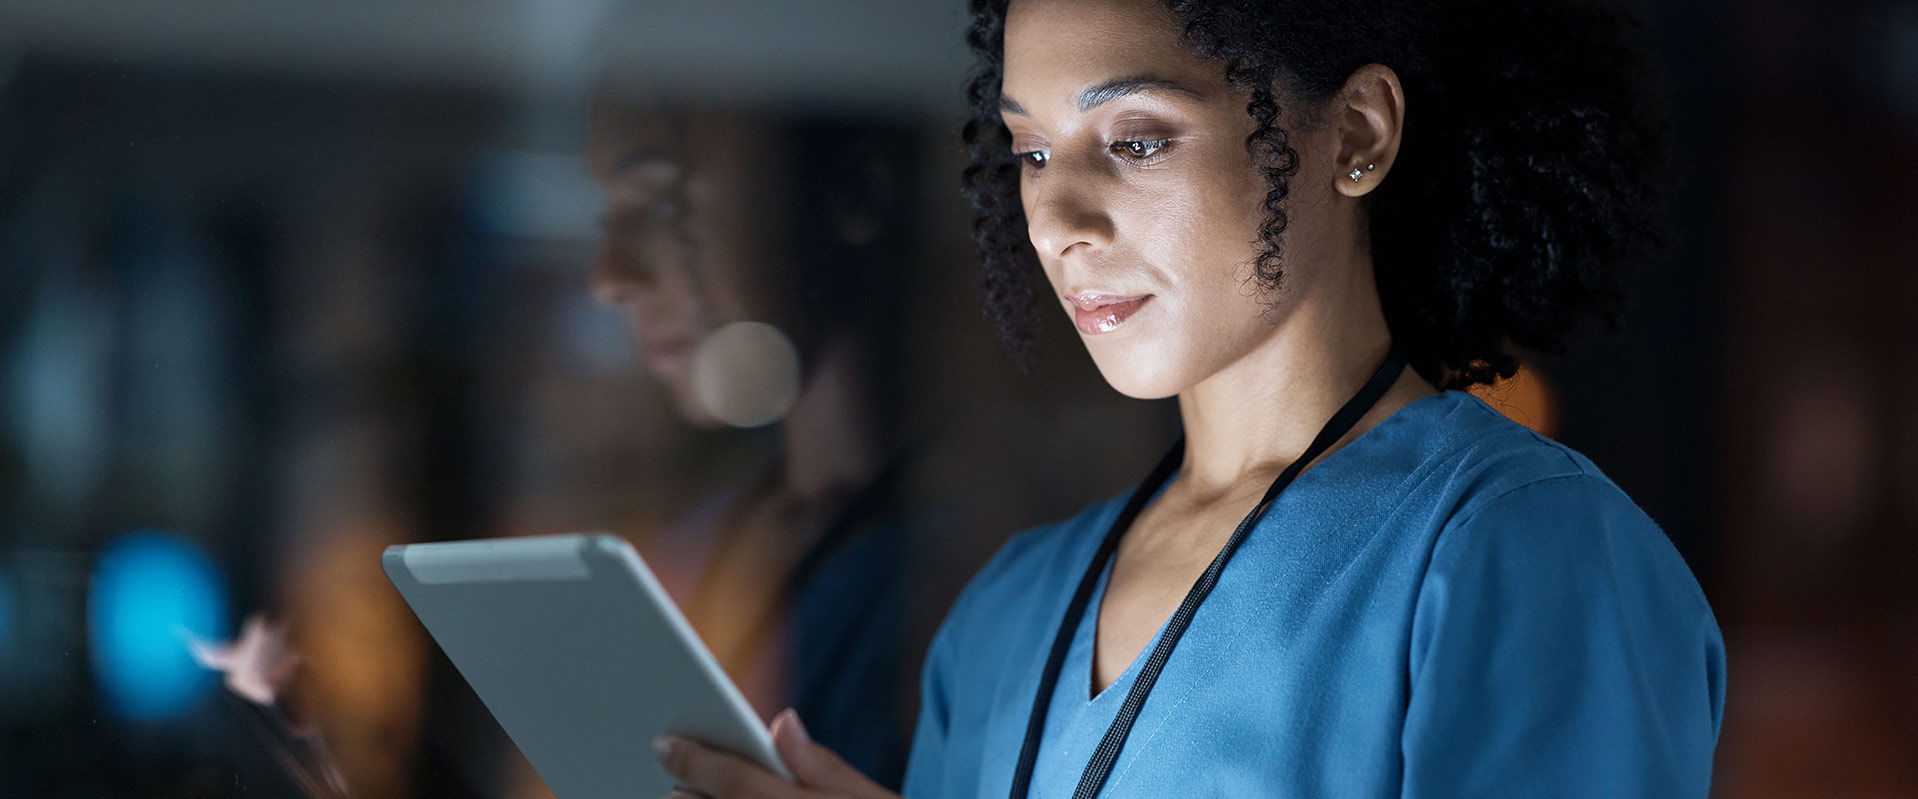 Konsignation im Krankenhaus: Warum eine effiziente Bestandssteuerung über die digitale Transformation führt